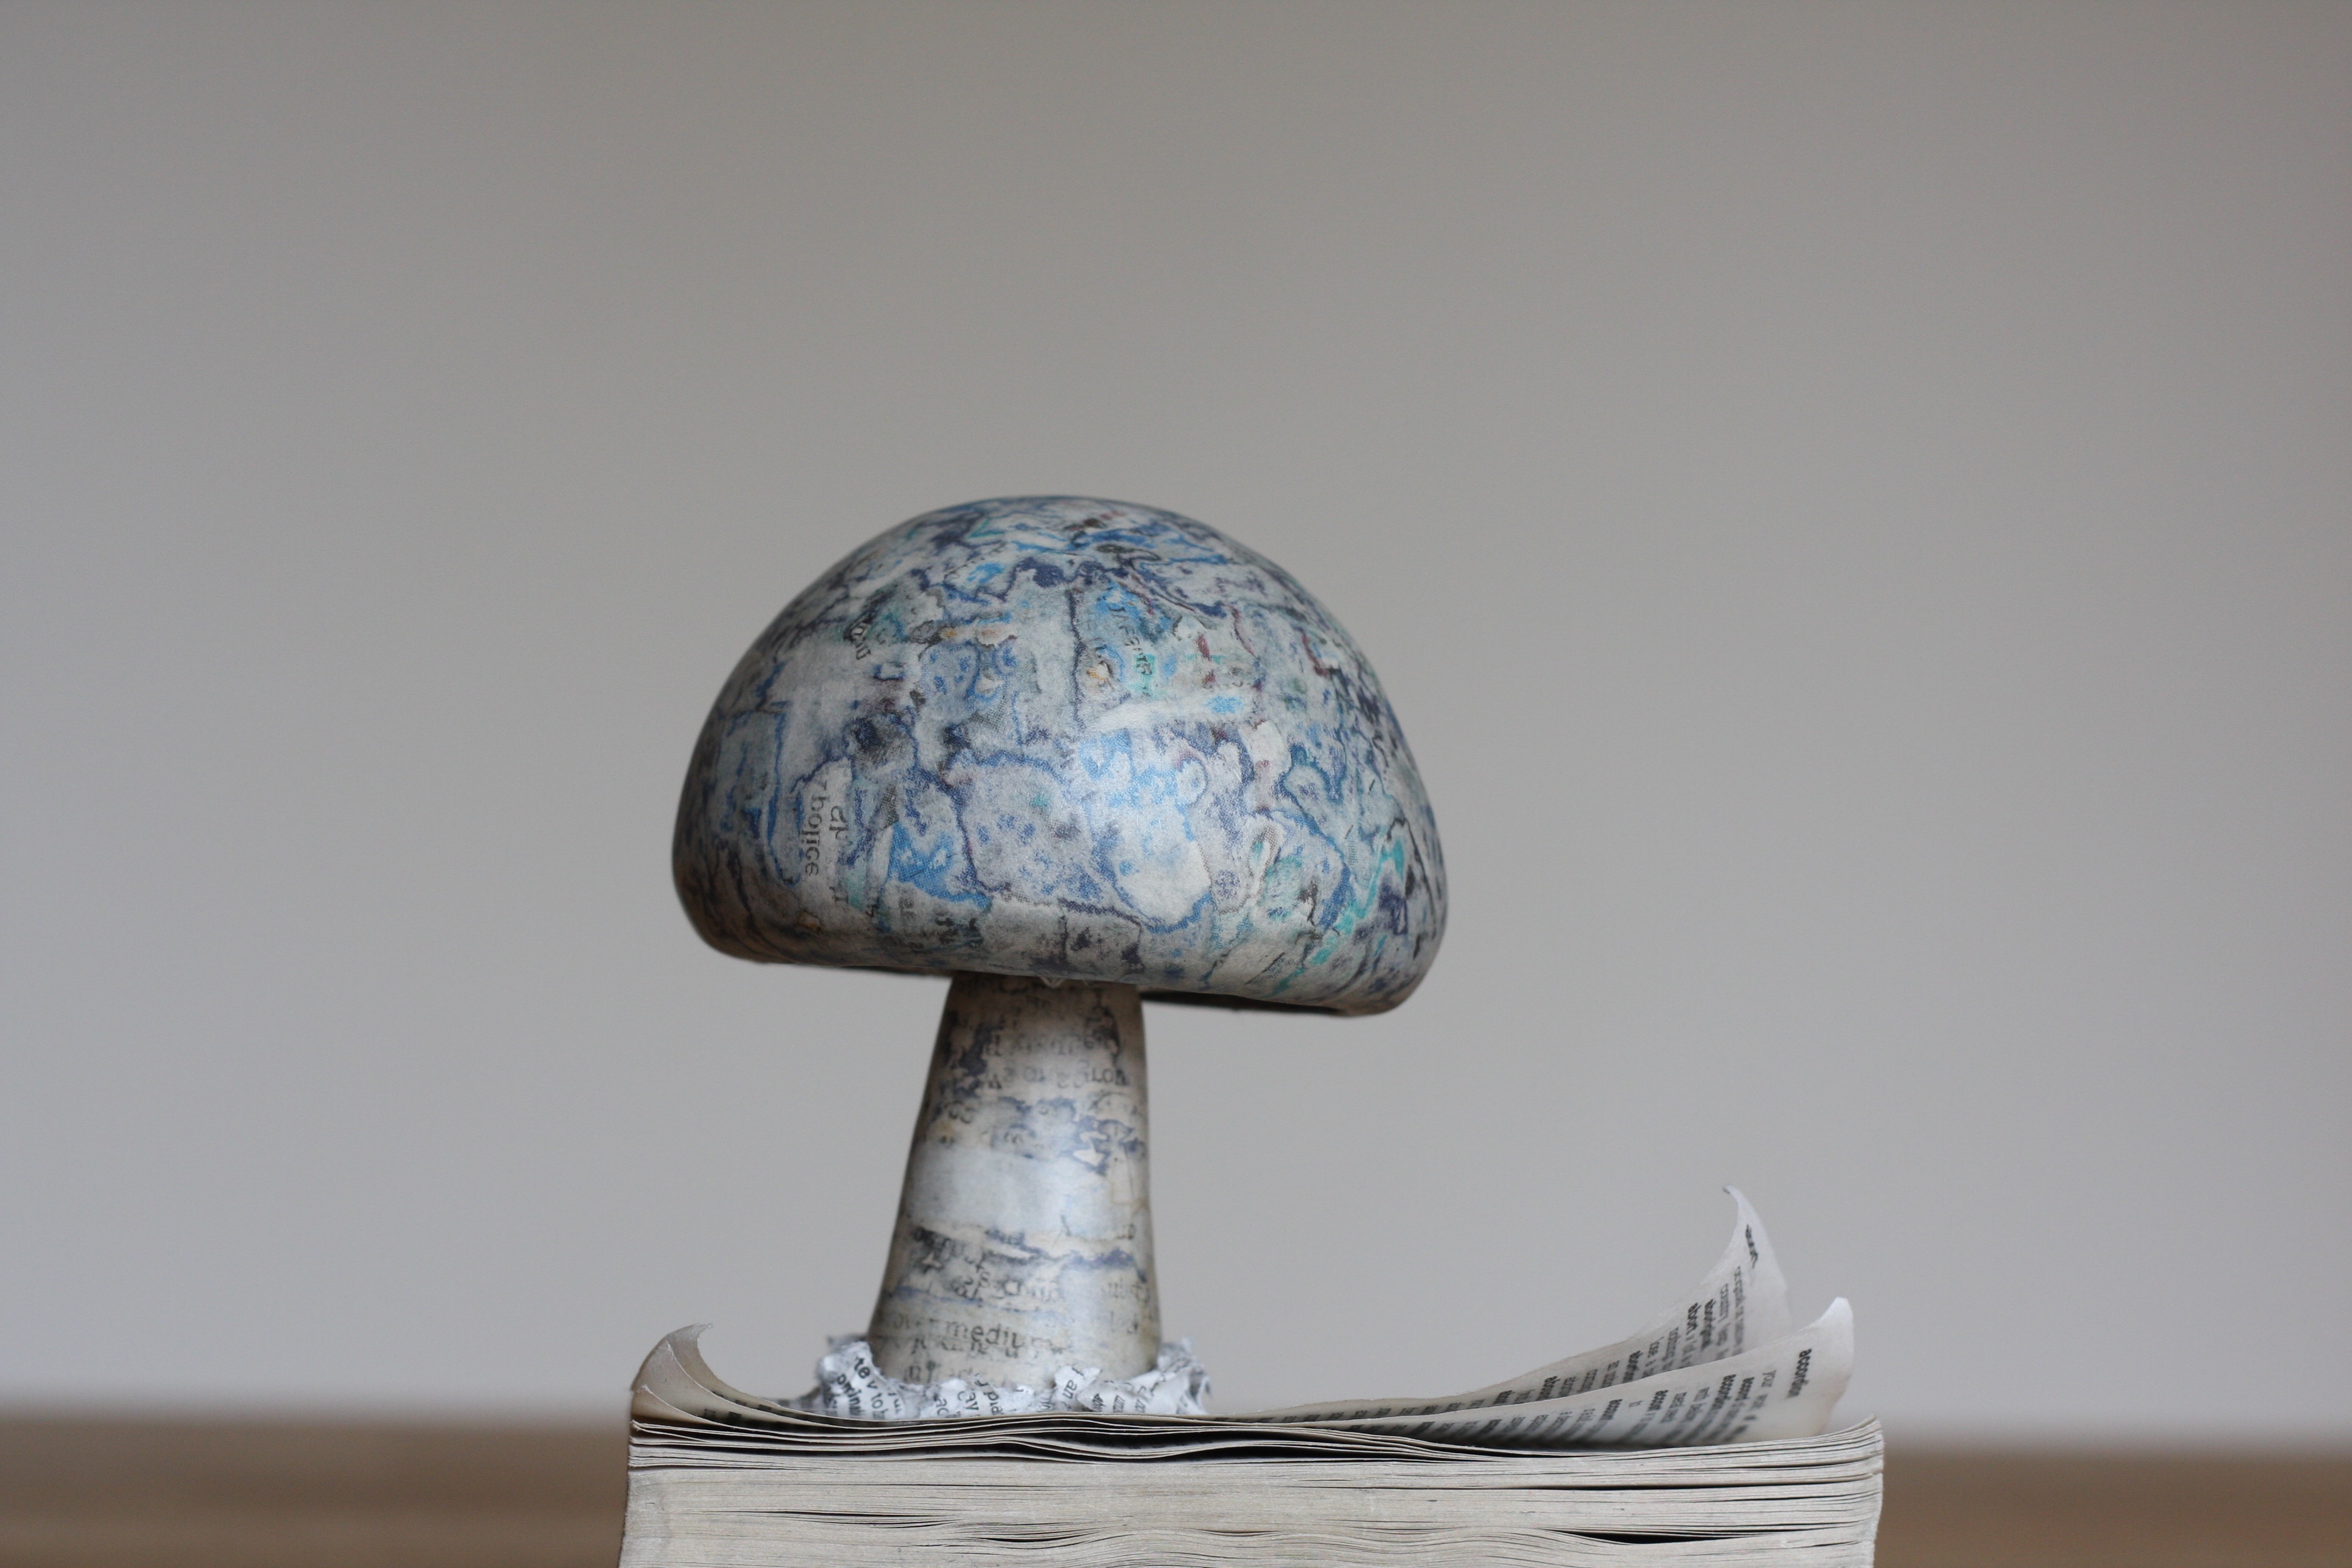 Papier-mâché mushroom, growing from a book